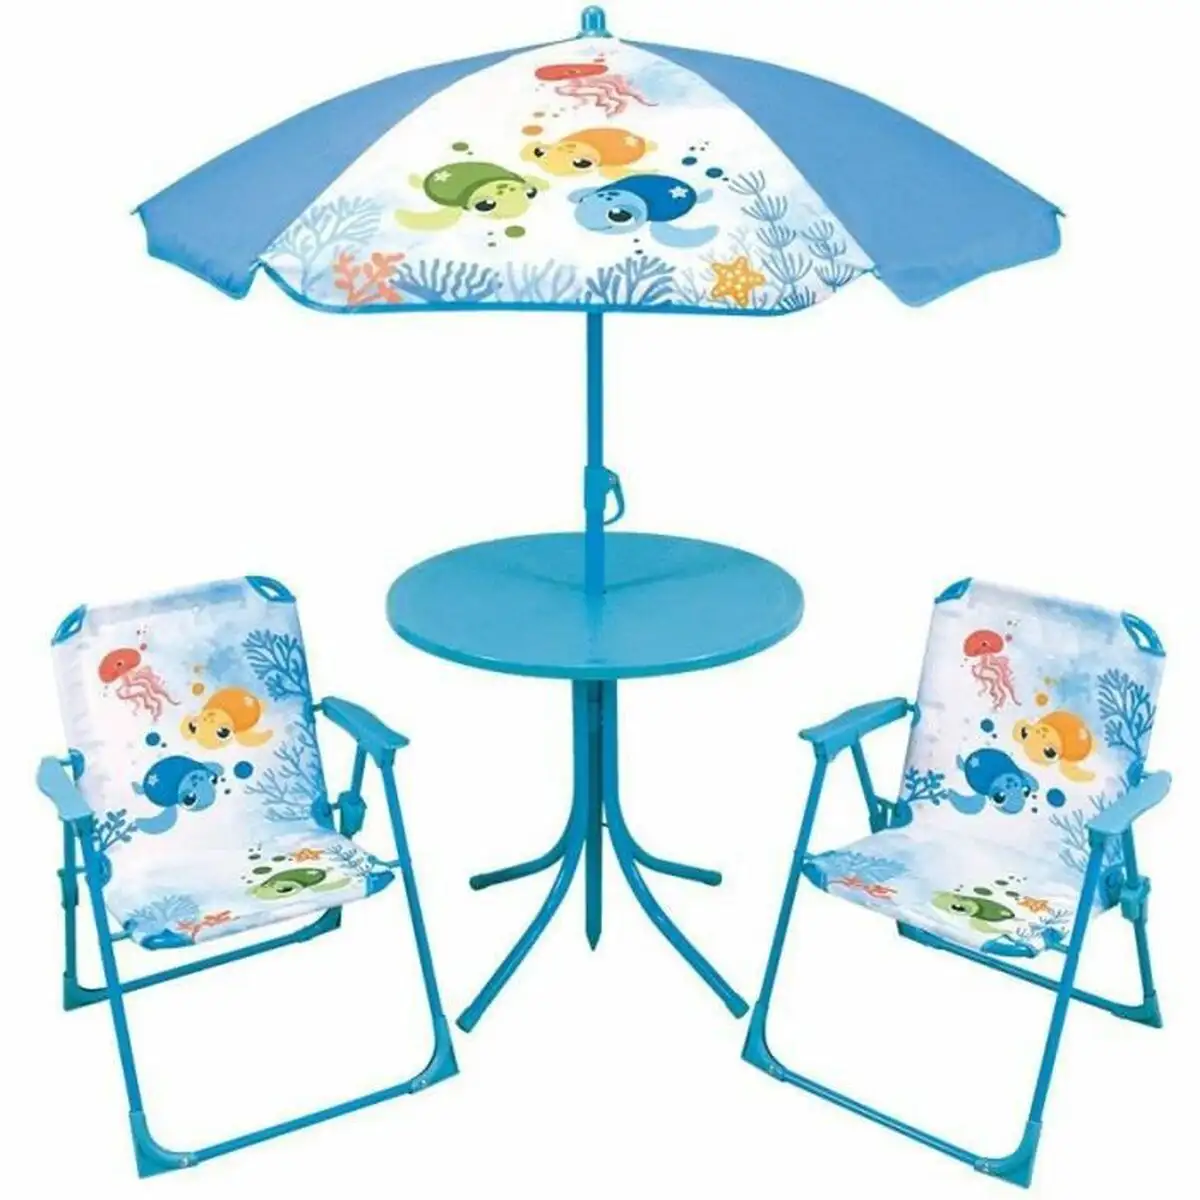 Set de table et chaises pour enfants fun house parasol_5490. Bienvenue sur DIAYTAR SENEGAL - Où Choisir est un Voyage Sensoriel. Plongez dans notre catalogue et trouvez des produits qui éveillent vos sens et embellissent votre quotidien.